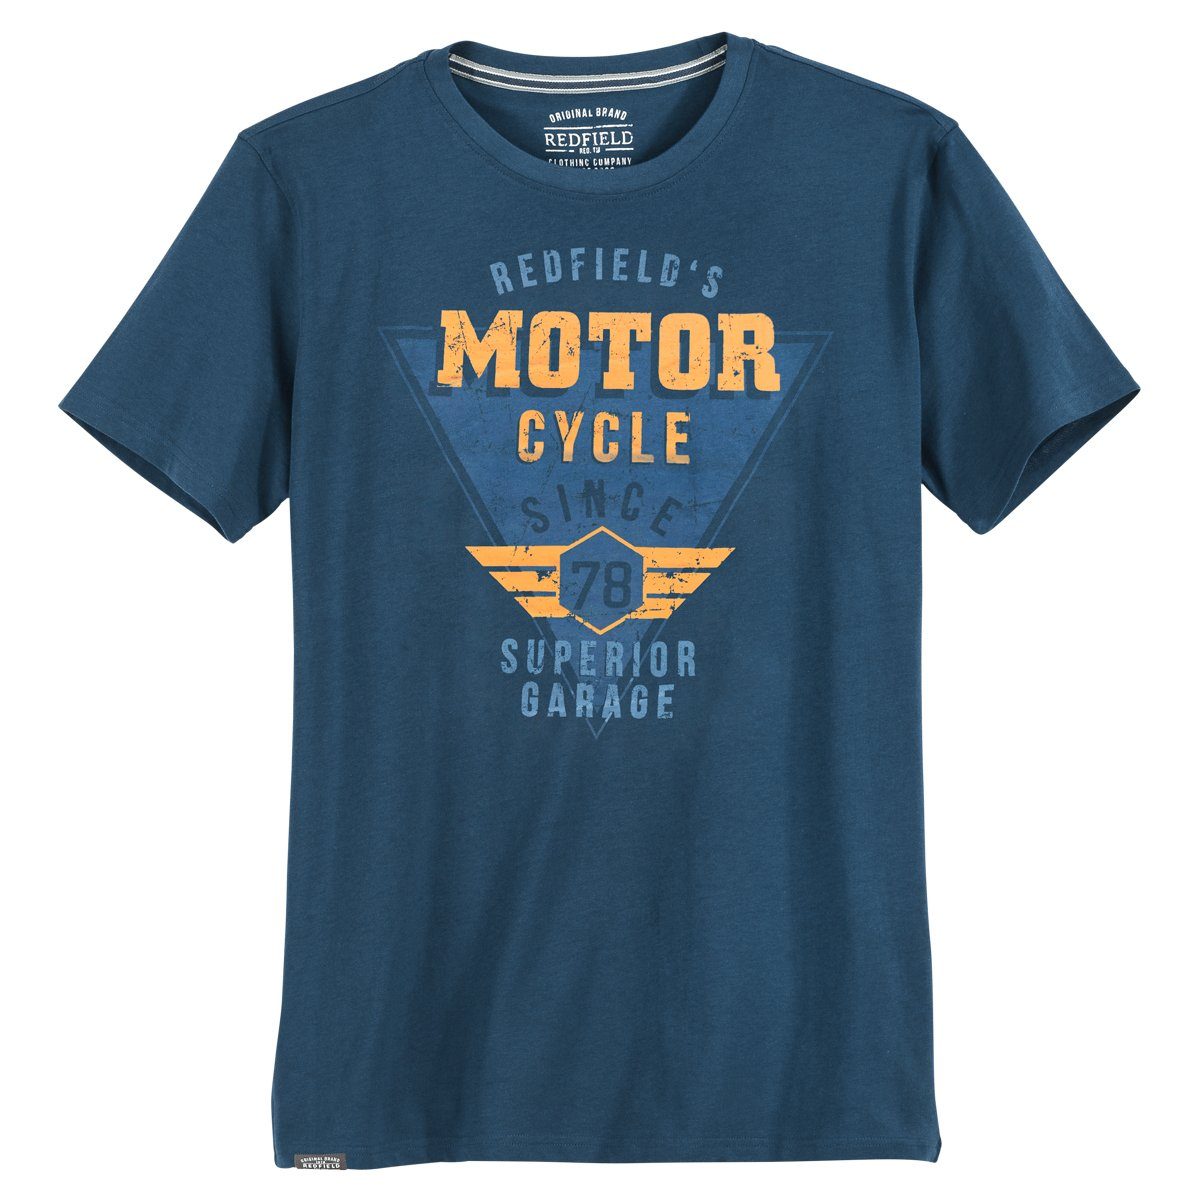 redfield Rundhalsshirt Übergrößen T-Shirt blau Vintageprint Motor Cycle Redfield